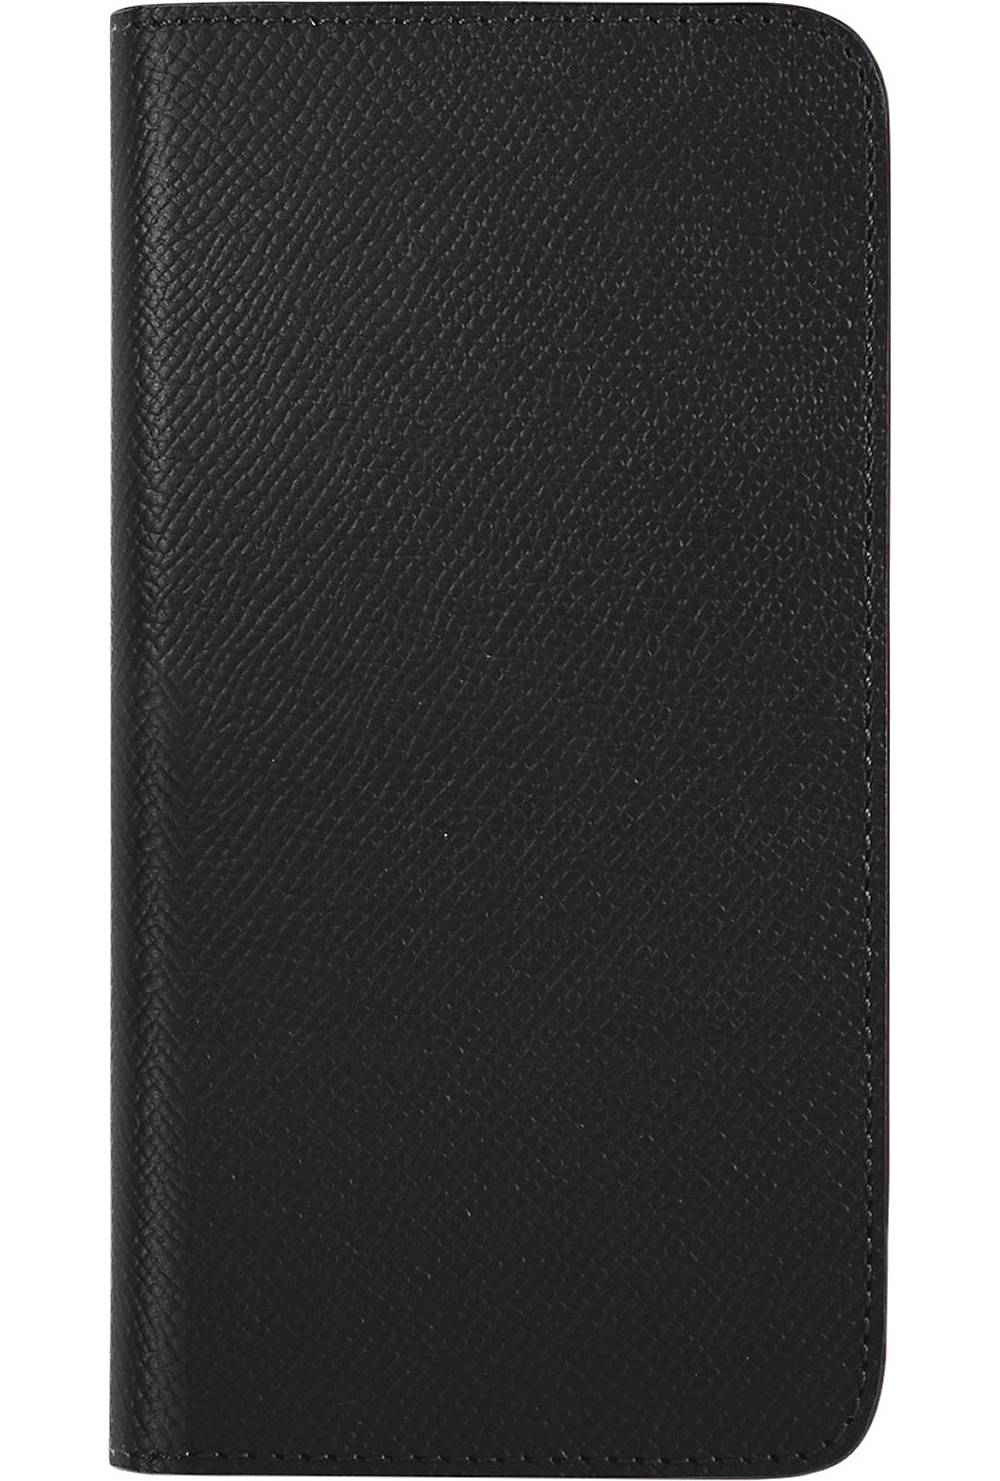 BONAVENTURA, Handyhülle Noblessa Diary Case (iphone 13 Pro Max) in schwarz, Handyhüllen & Zubehör für Damen